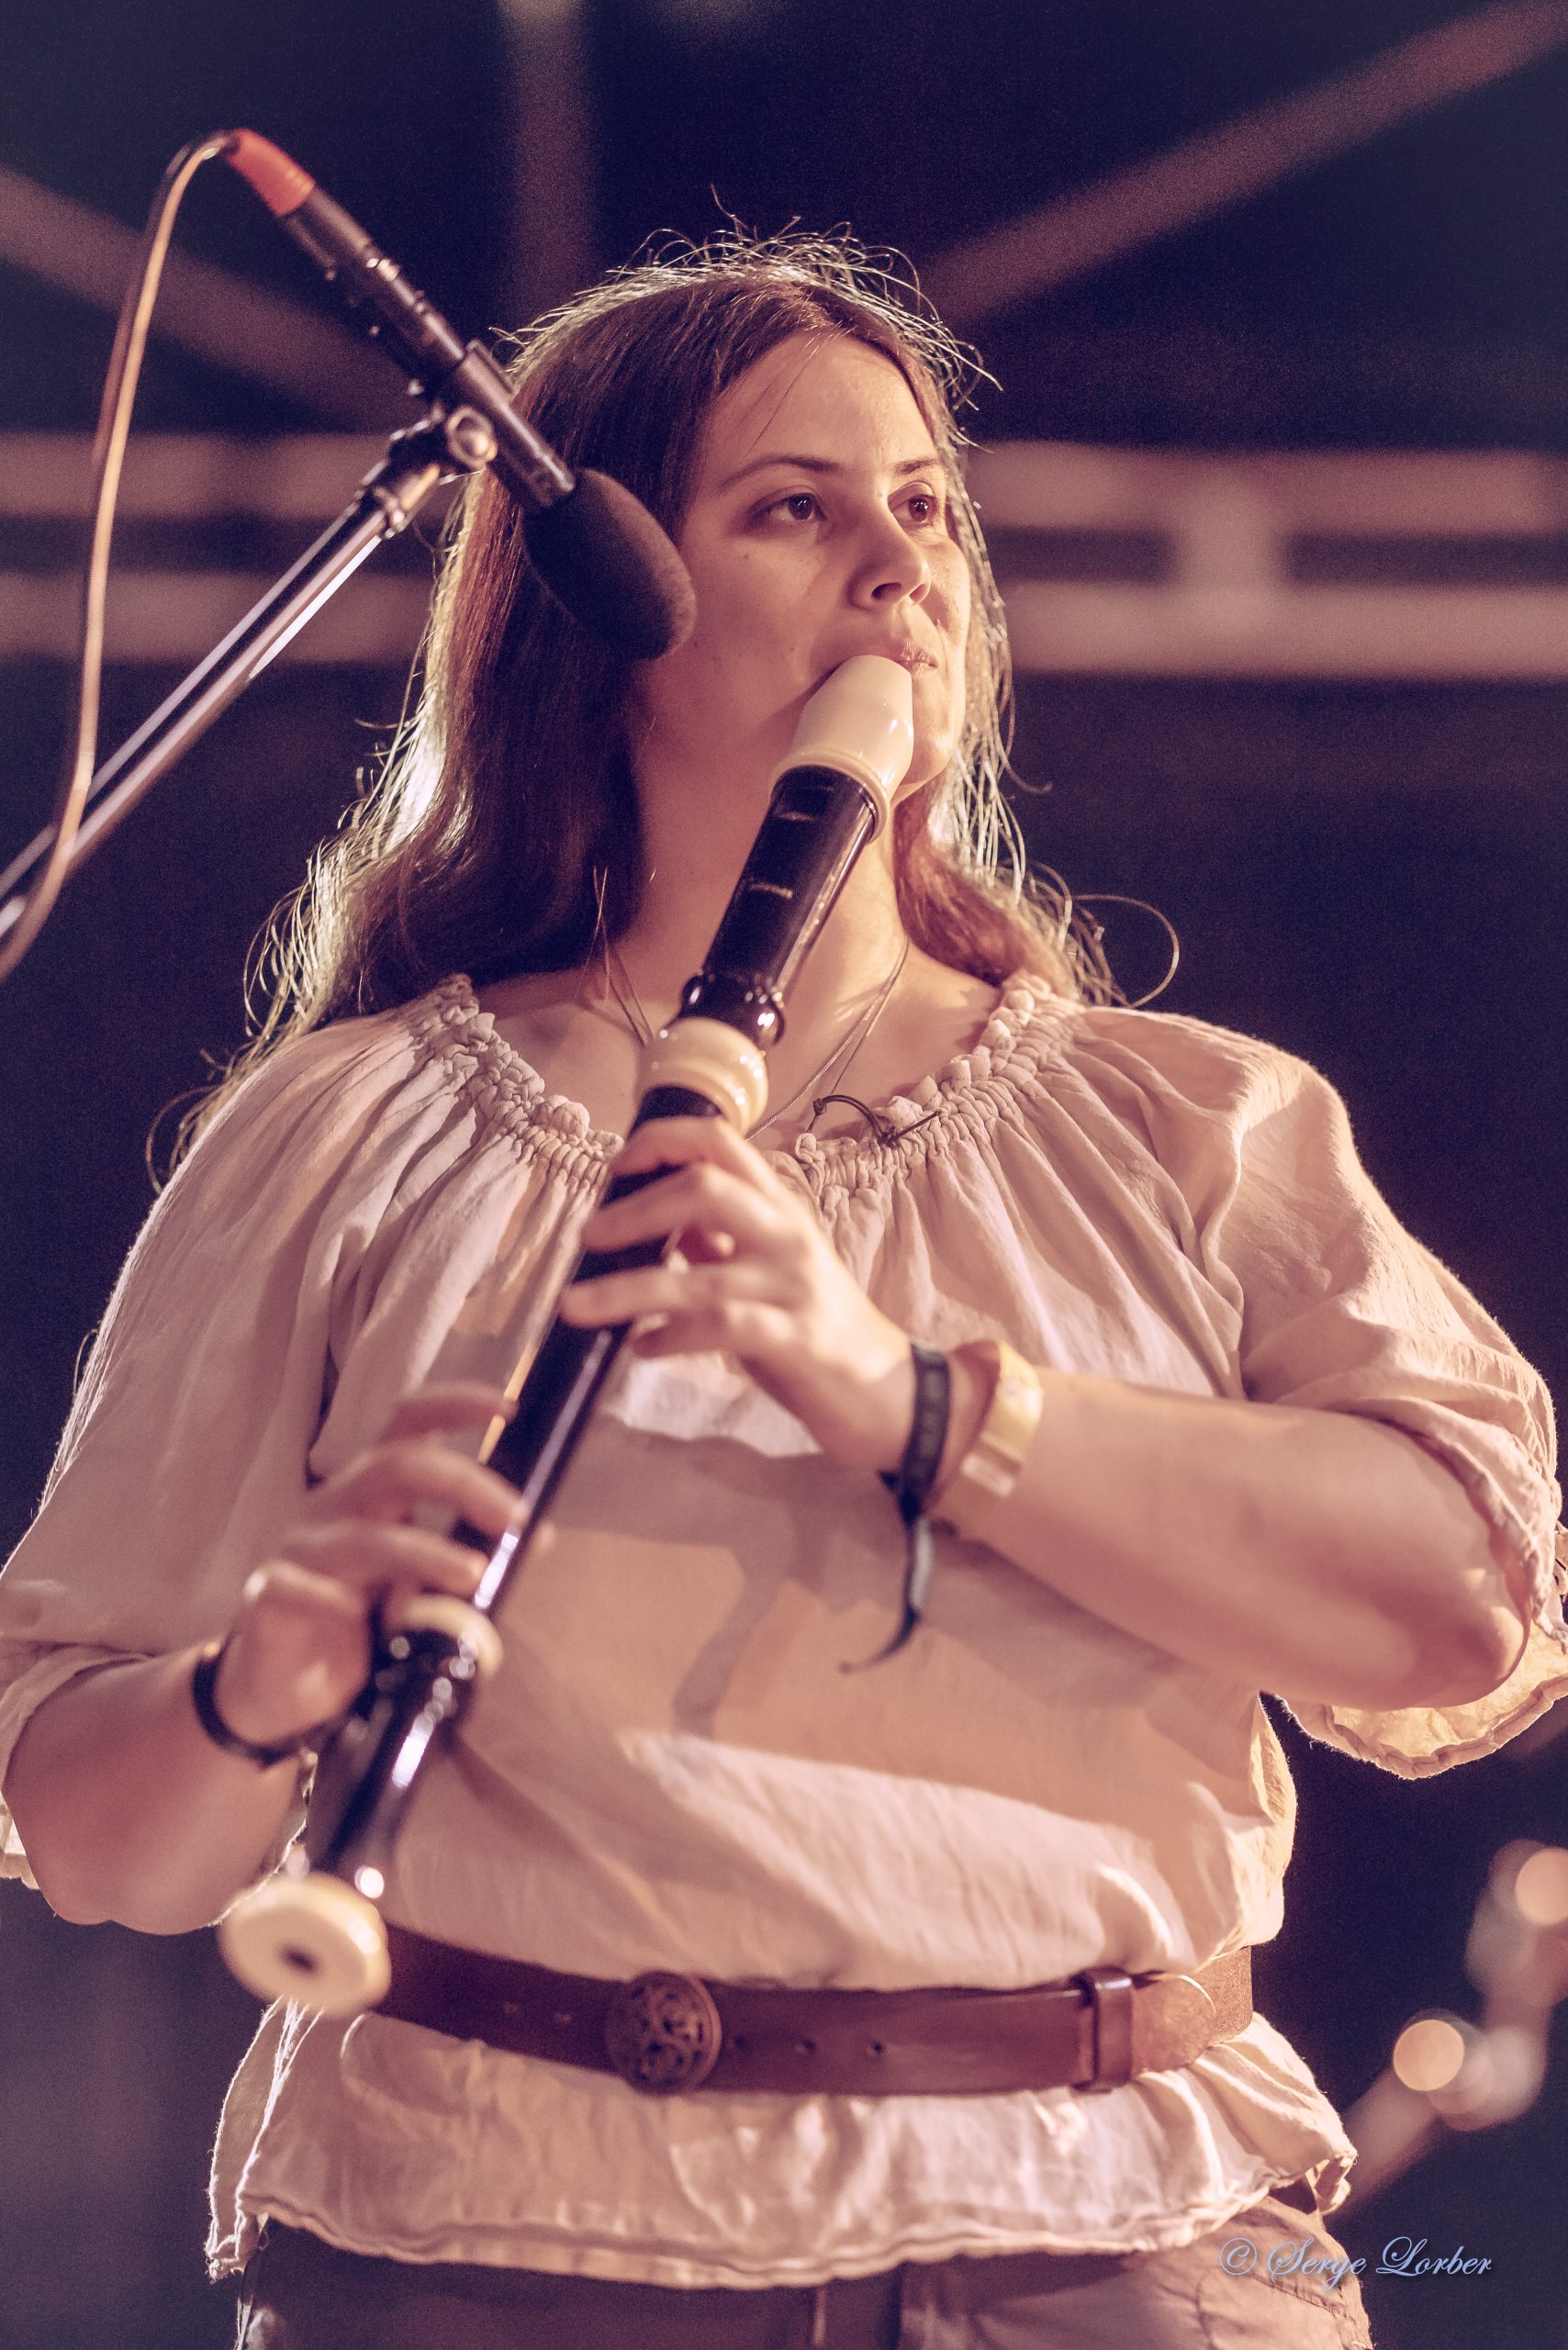 Musicienne jouant de la flûte à bec ténor devant un micro